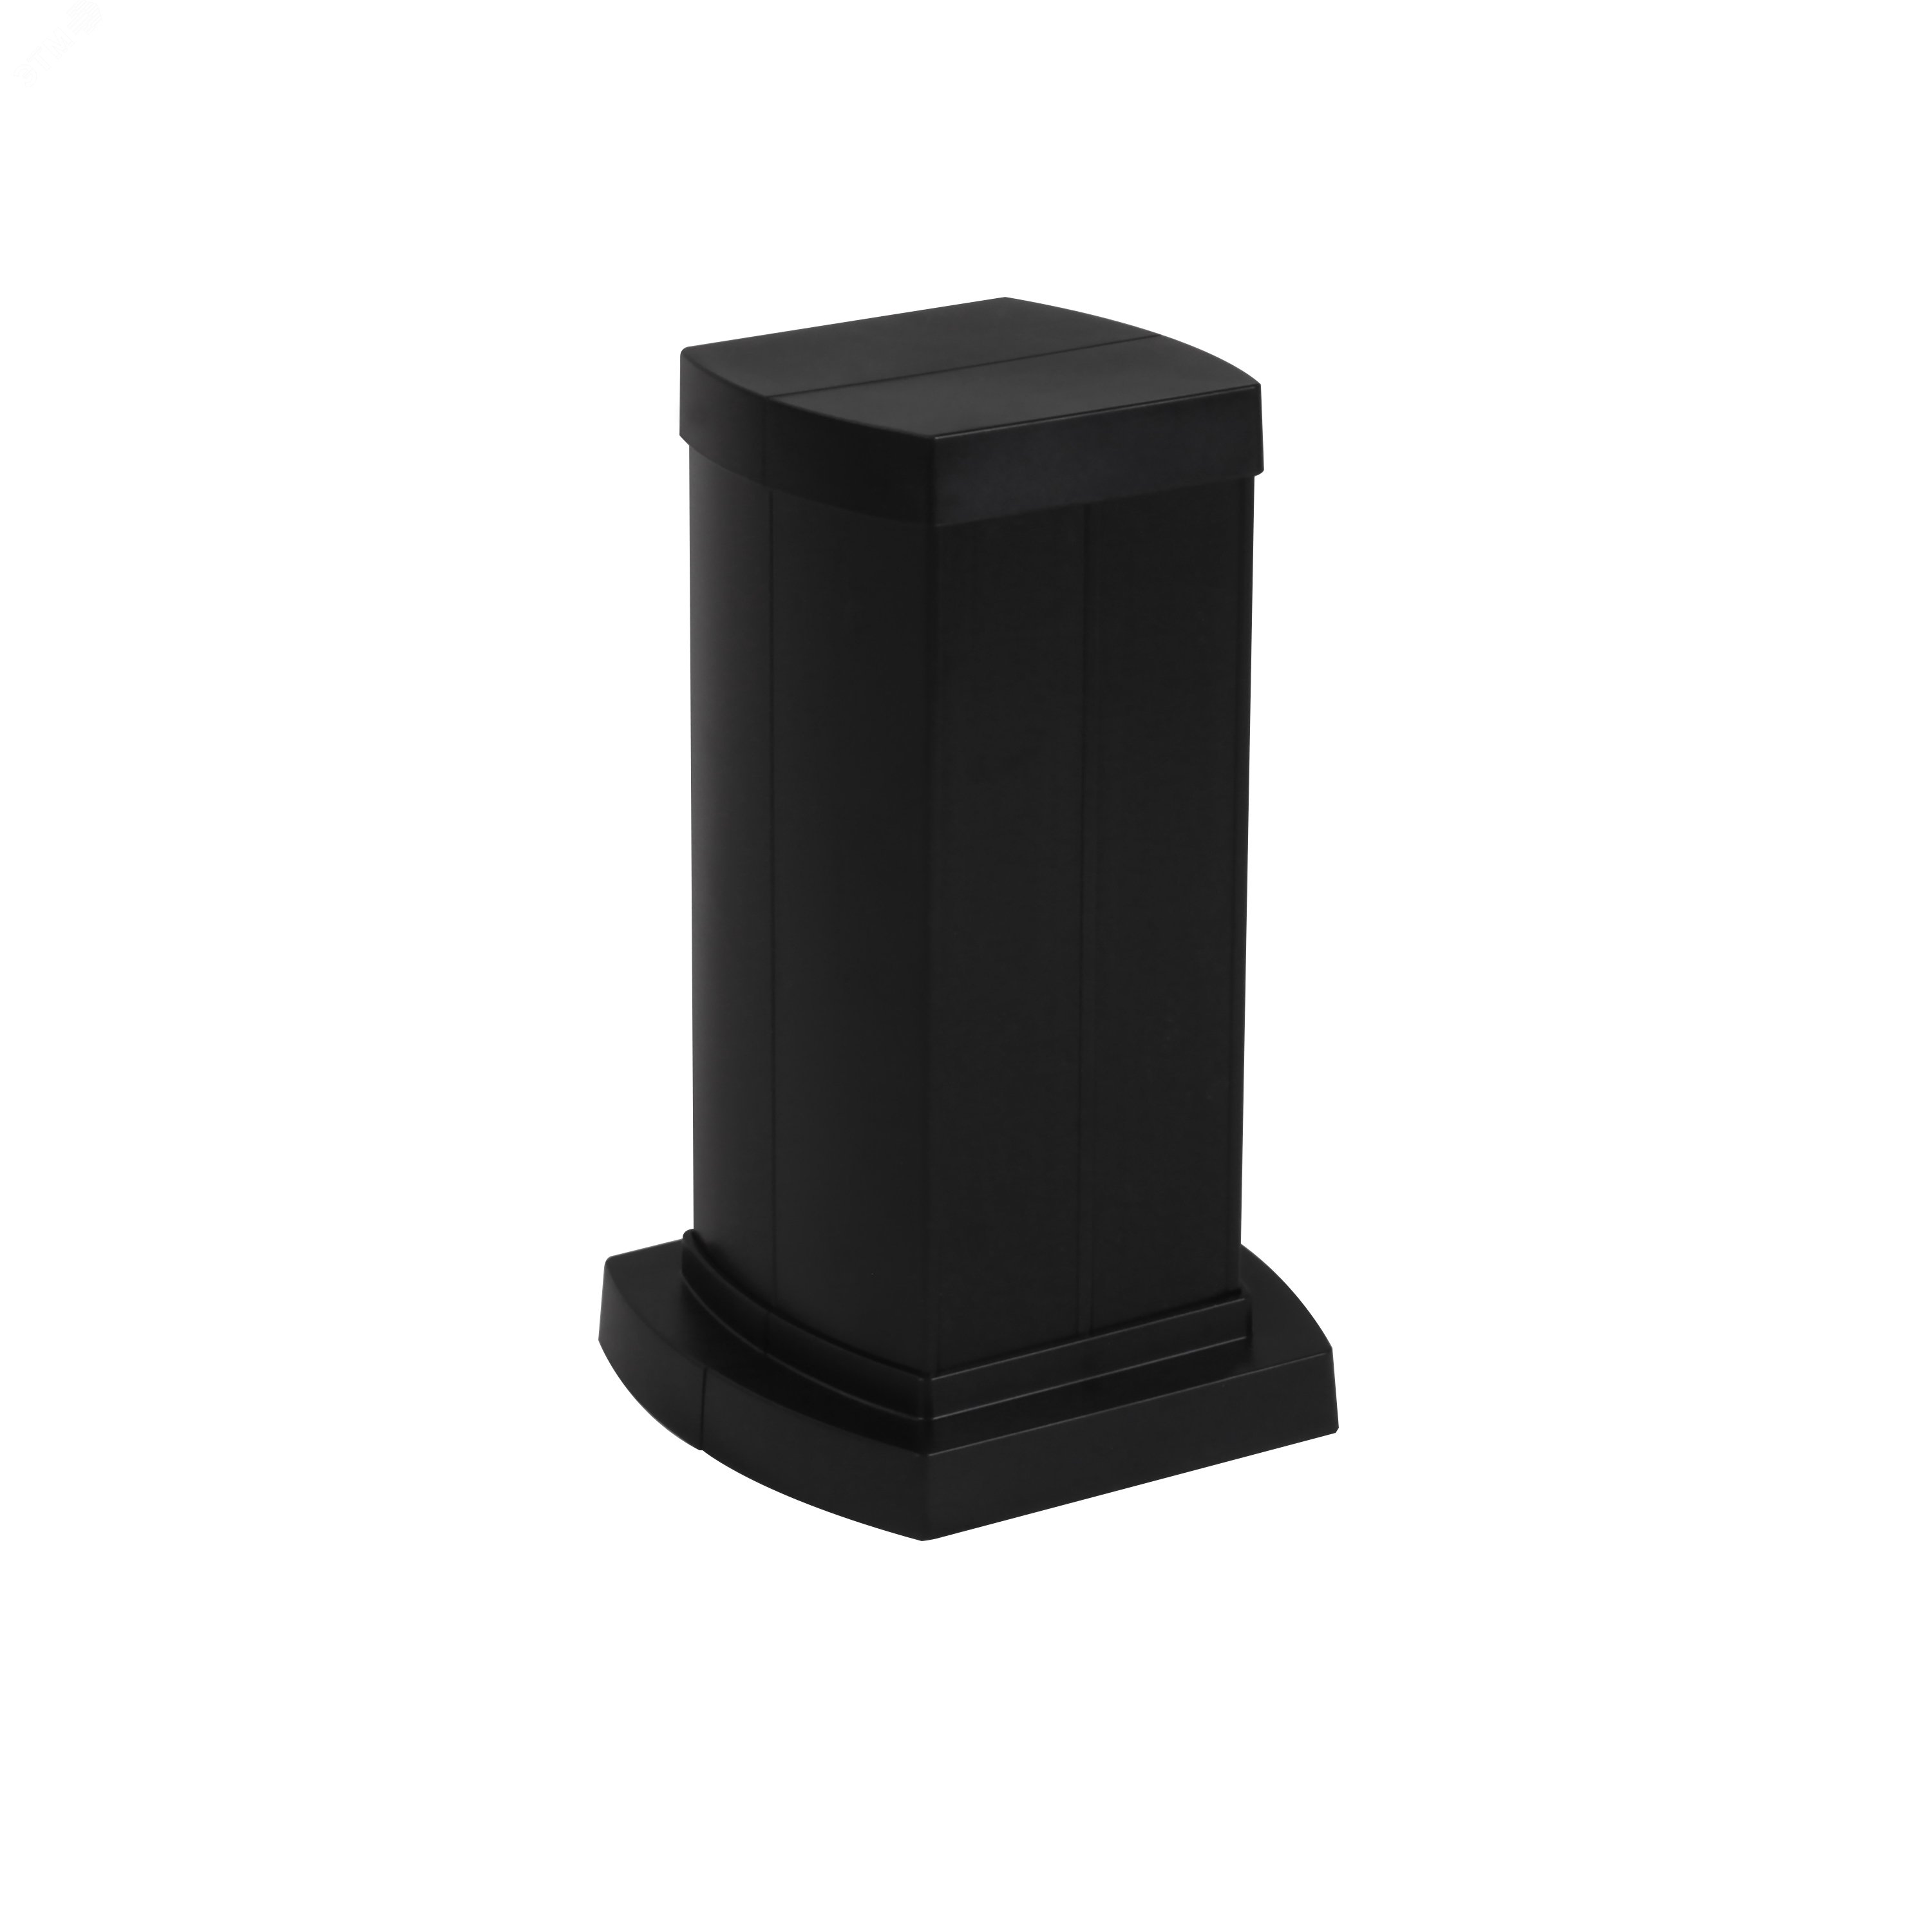 Snap-On мини-колонна алюминиевая с крышкой из пластика 4 секции, высота 0,3 метра, цвет черный 653042 Legrand - превью 2